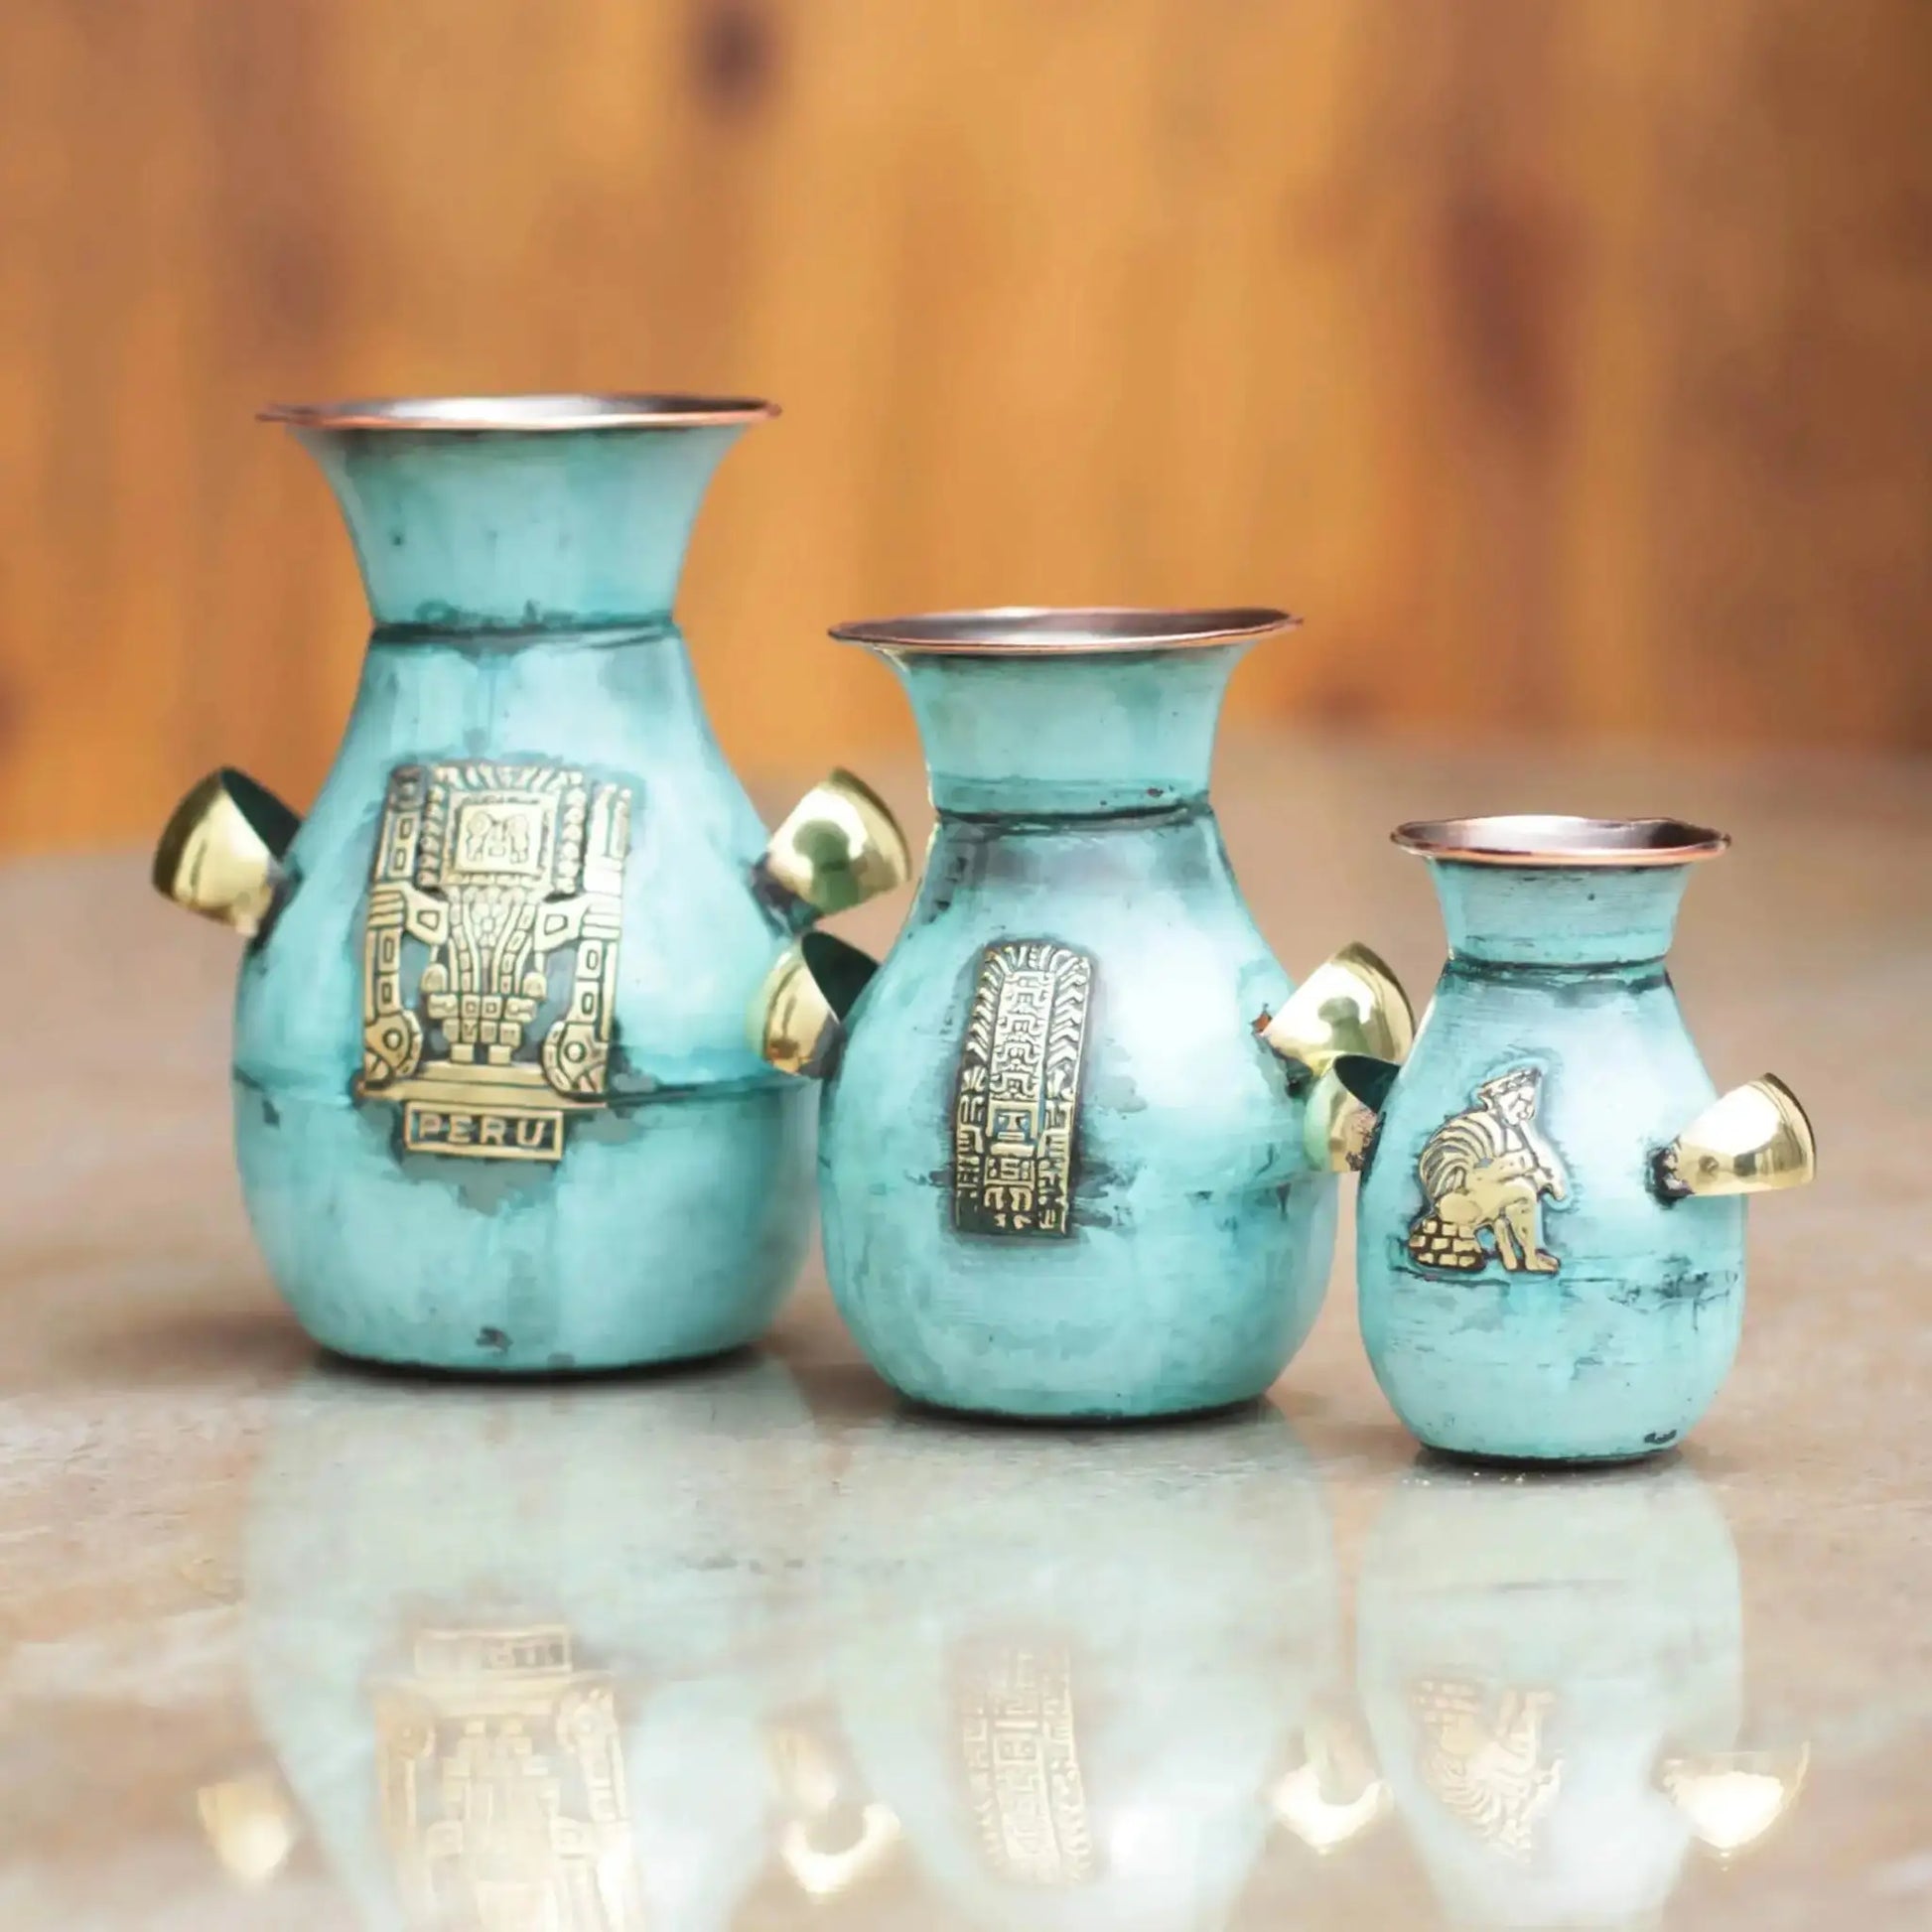 Inca Inheritance - Copper Bronze Vase (Set of 3) - Art